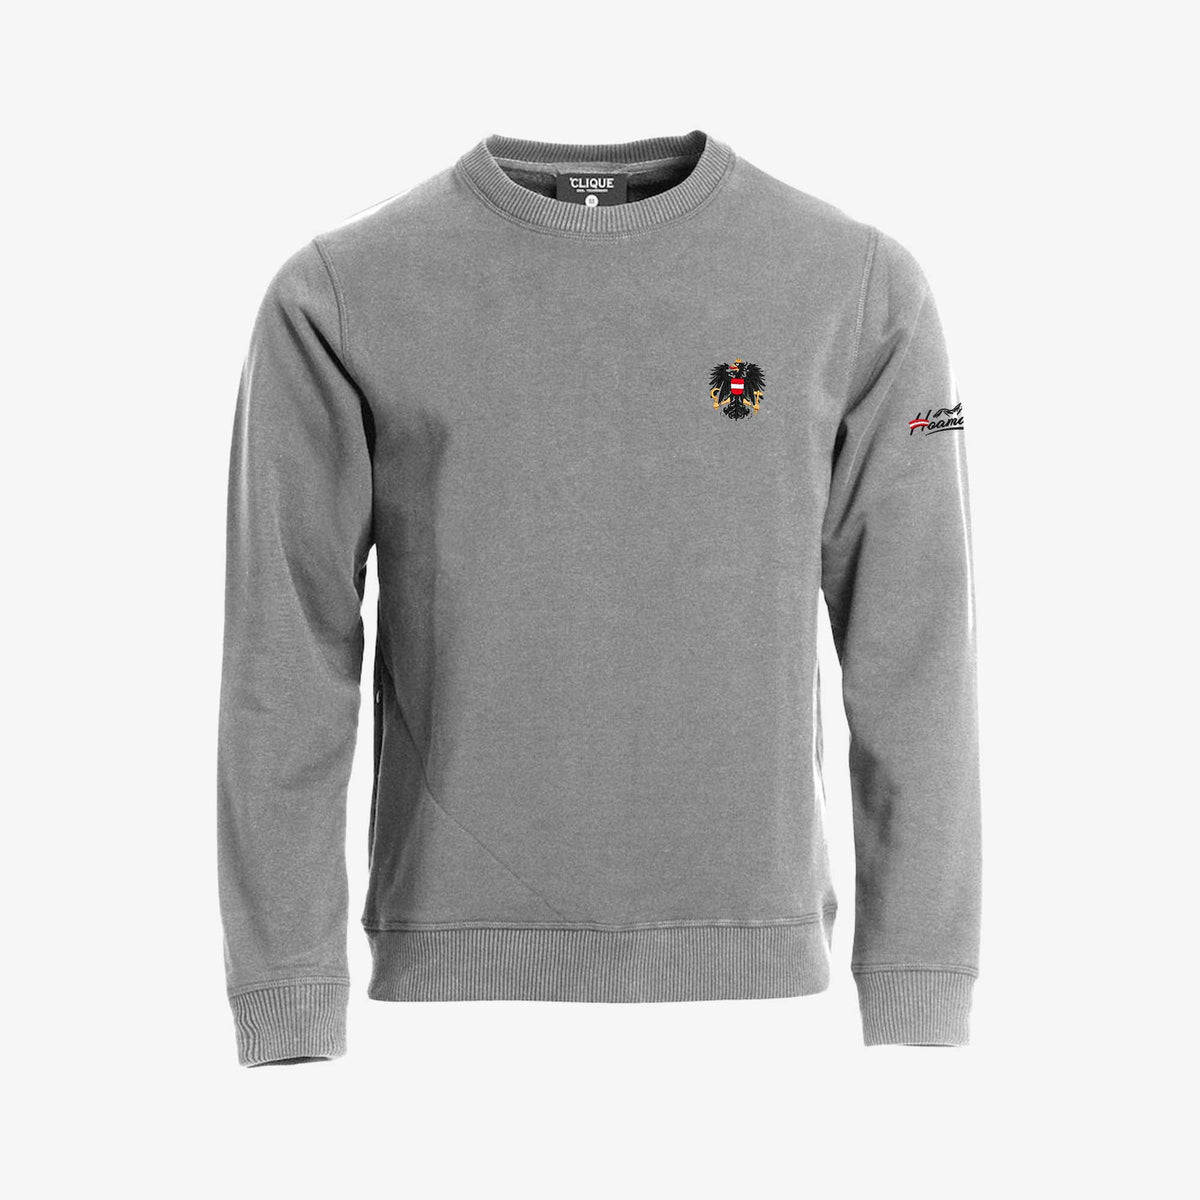 Sweater mit Österreich Adler #Farbe_Grau